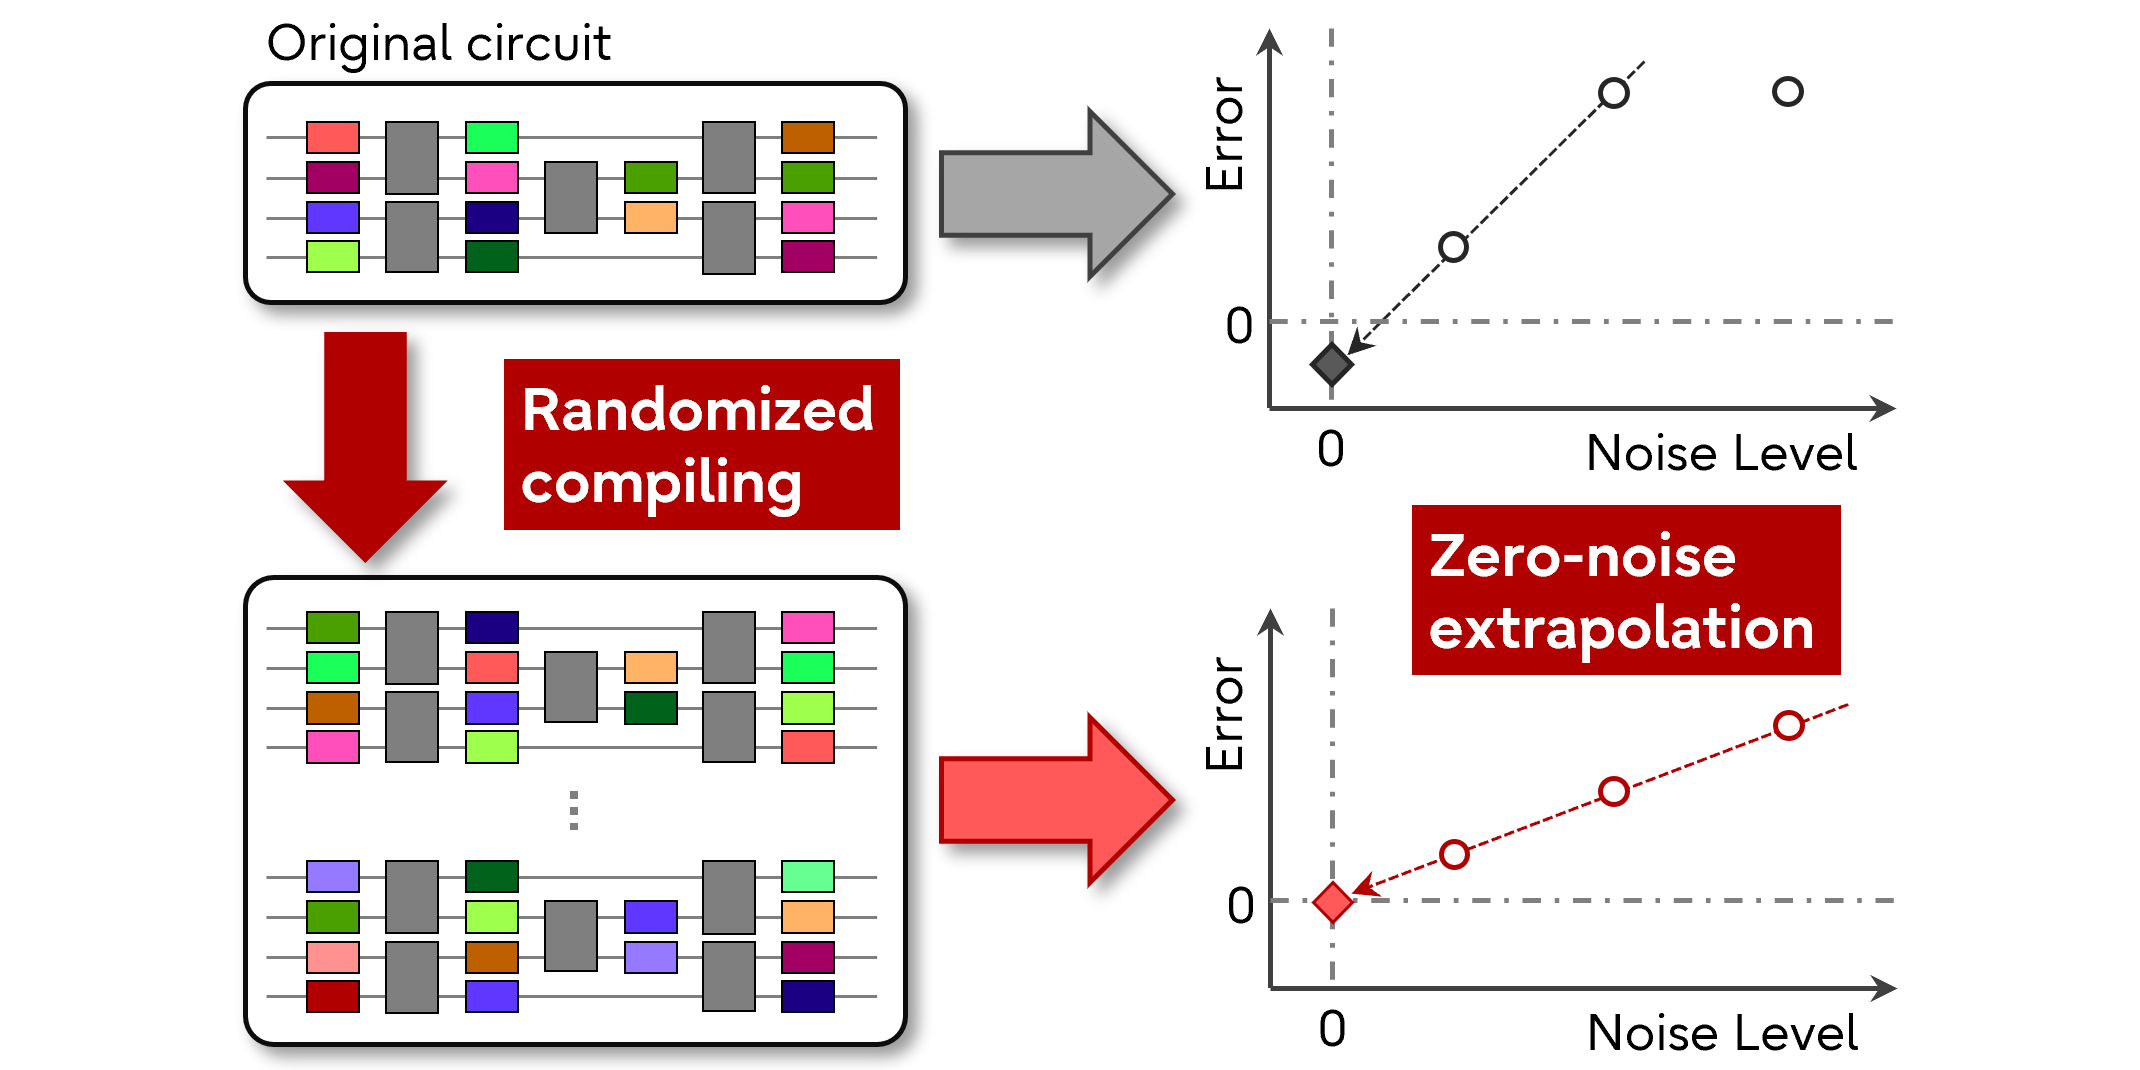 Synergiczne łagodzenie błędów kwantowych poprzez randomizowaną kompilację i ekstrapolację zerowego szumu dla wariacyjnego kwantowego solwera własnego